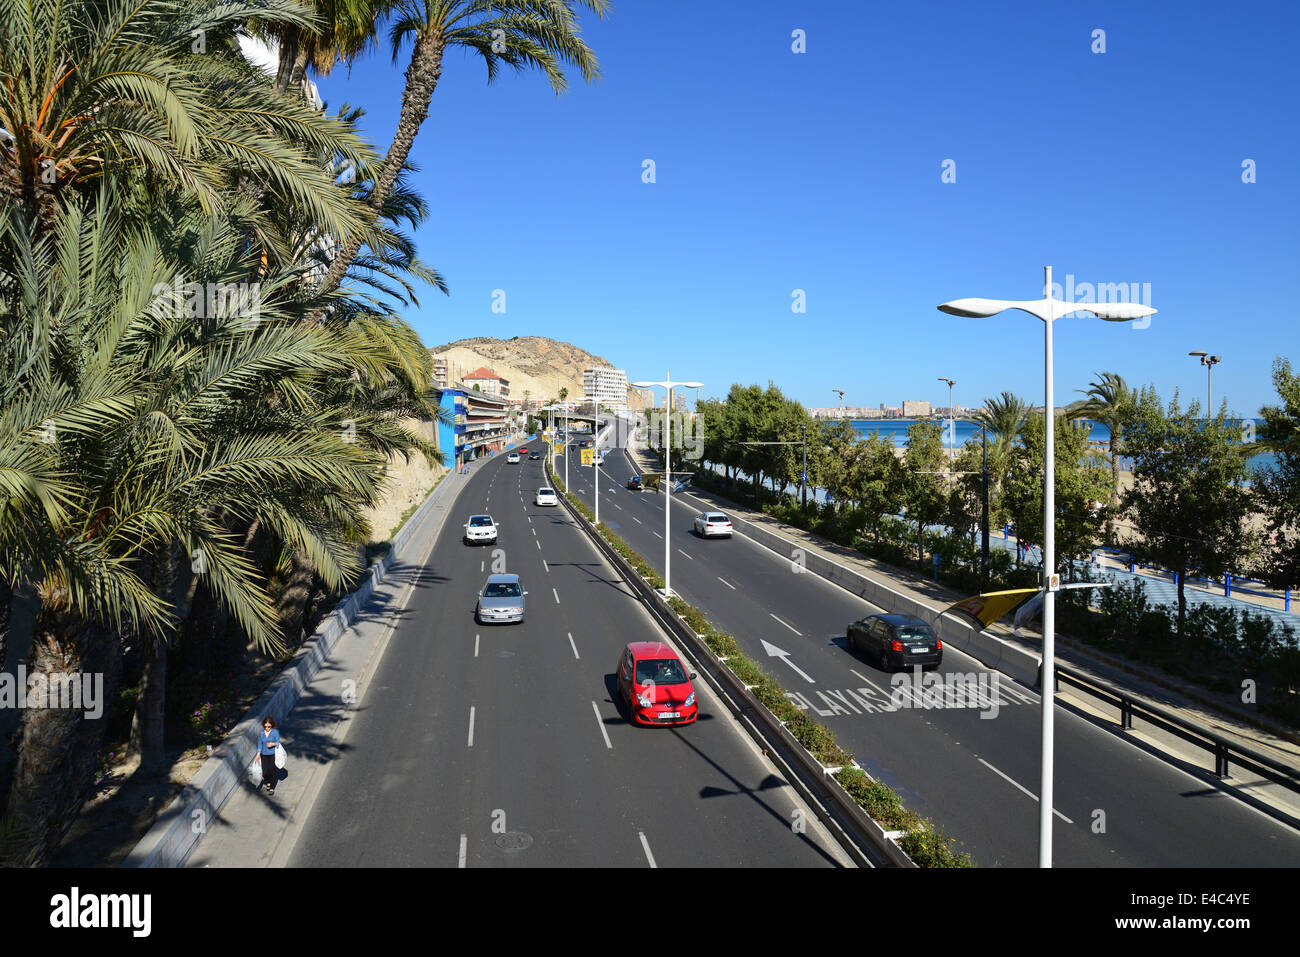 Calle Jovellanos, Playa del Postiguet, Alicante, Costa Blanca, Alicante Province, Kingdom of Spain Stock Photo